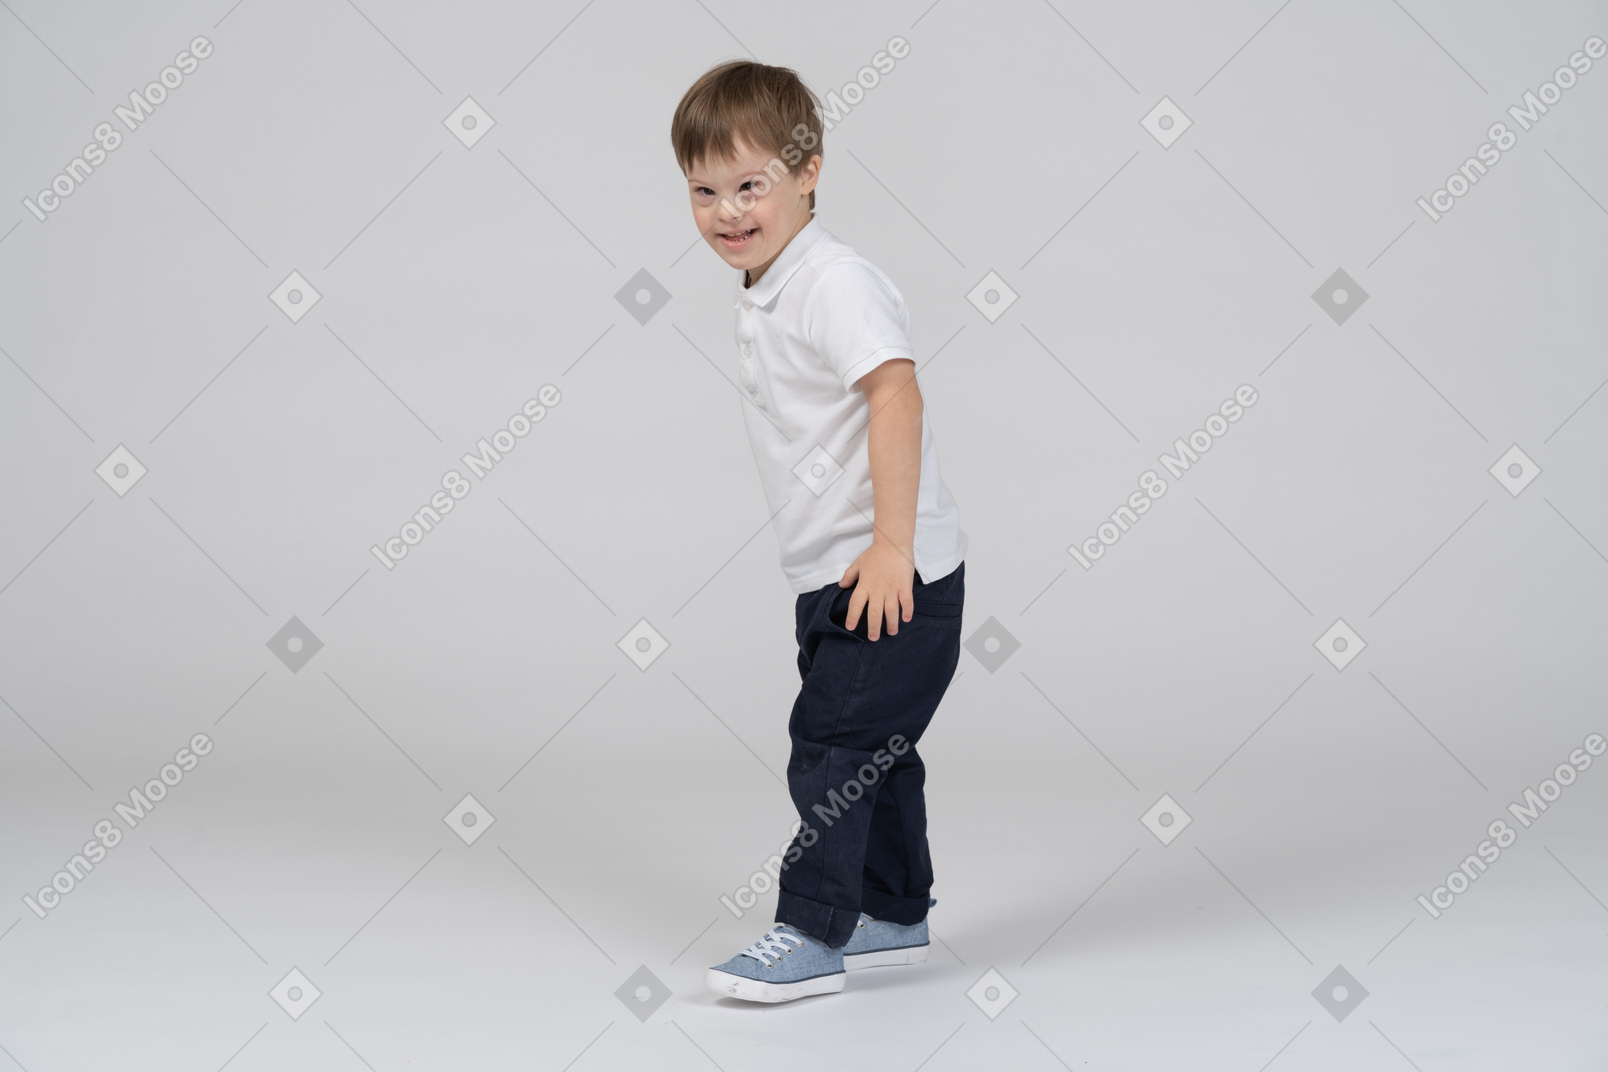 Vista lateral de un niño sonriente con ropa informal